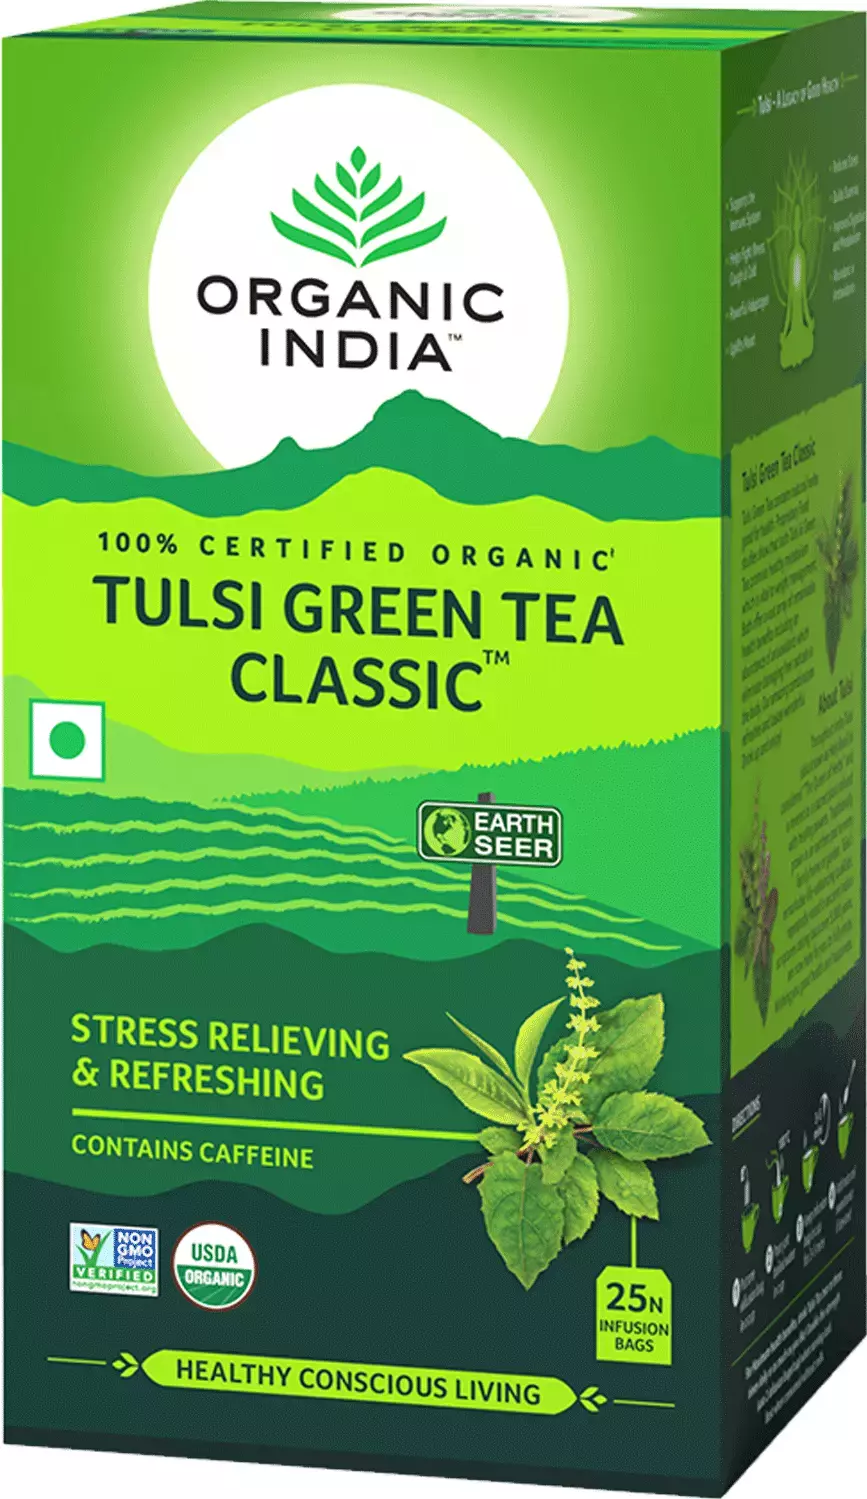 ORGANIC INDIA TULSI GREEN TEA CLASSIC